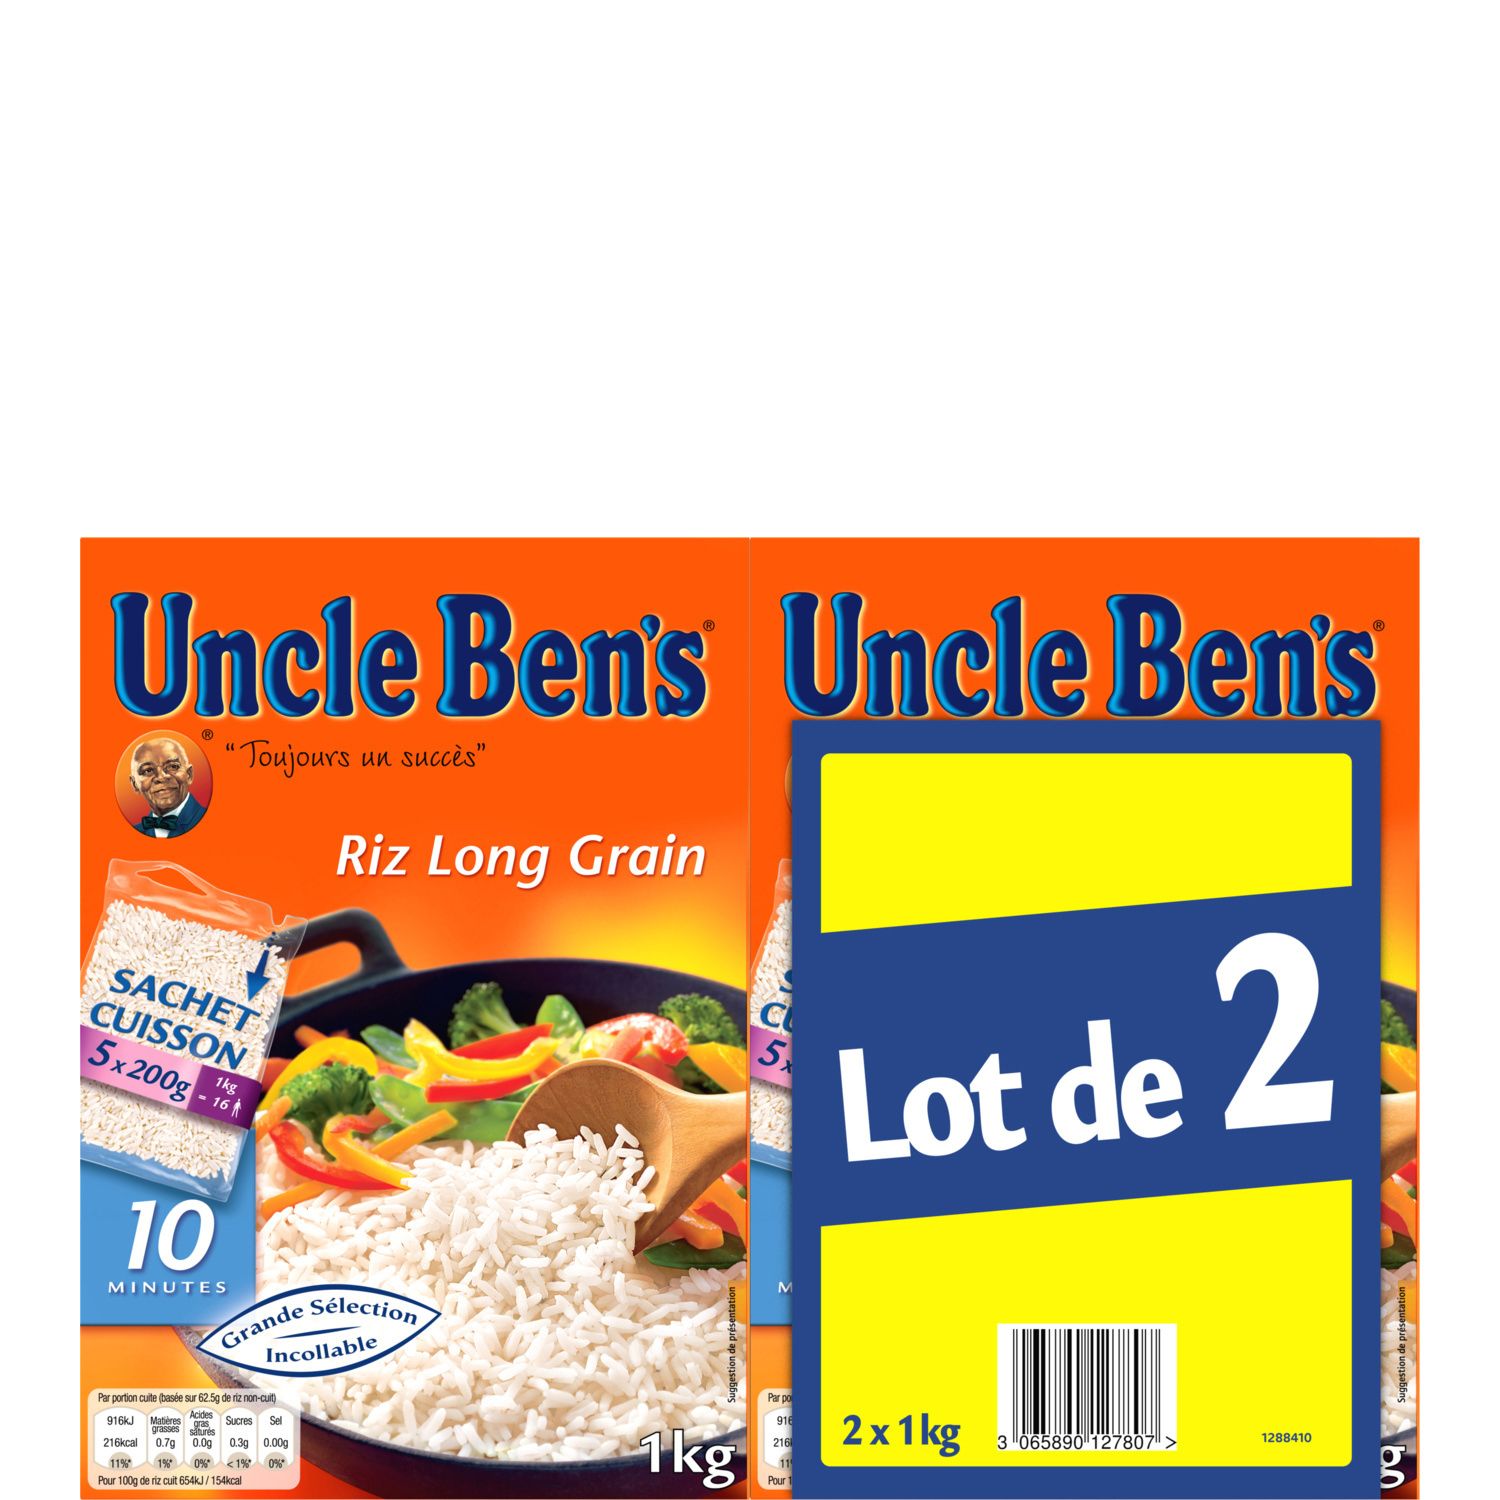 UNCLE BEN'S Uncle Benz riz long grain sachet cuisson bipack 2x1kg